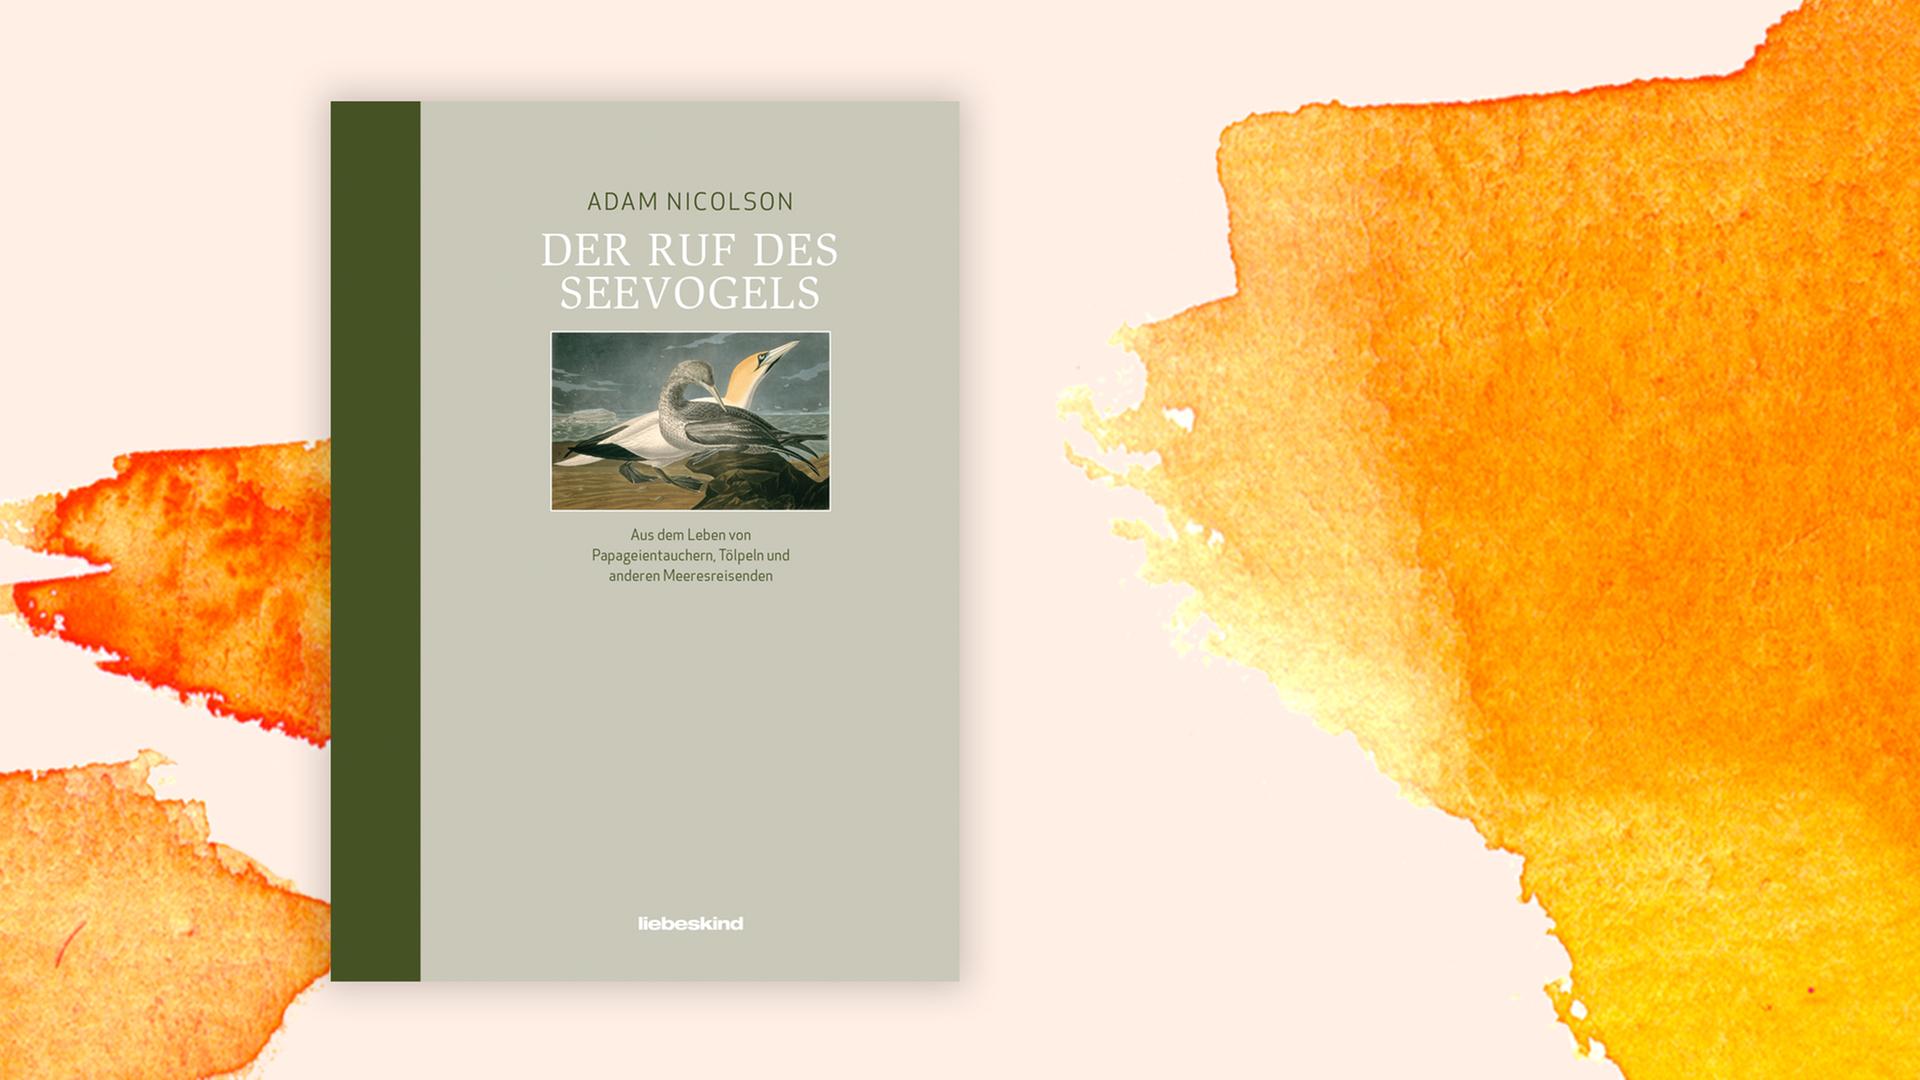 Cover des Buchs "Der Ruf des Seevogels" von Adam Nicolson. Das blass beige-grüne Cover ist mit einer farbigen Zeichnung von zwei Vögeln versehen.